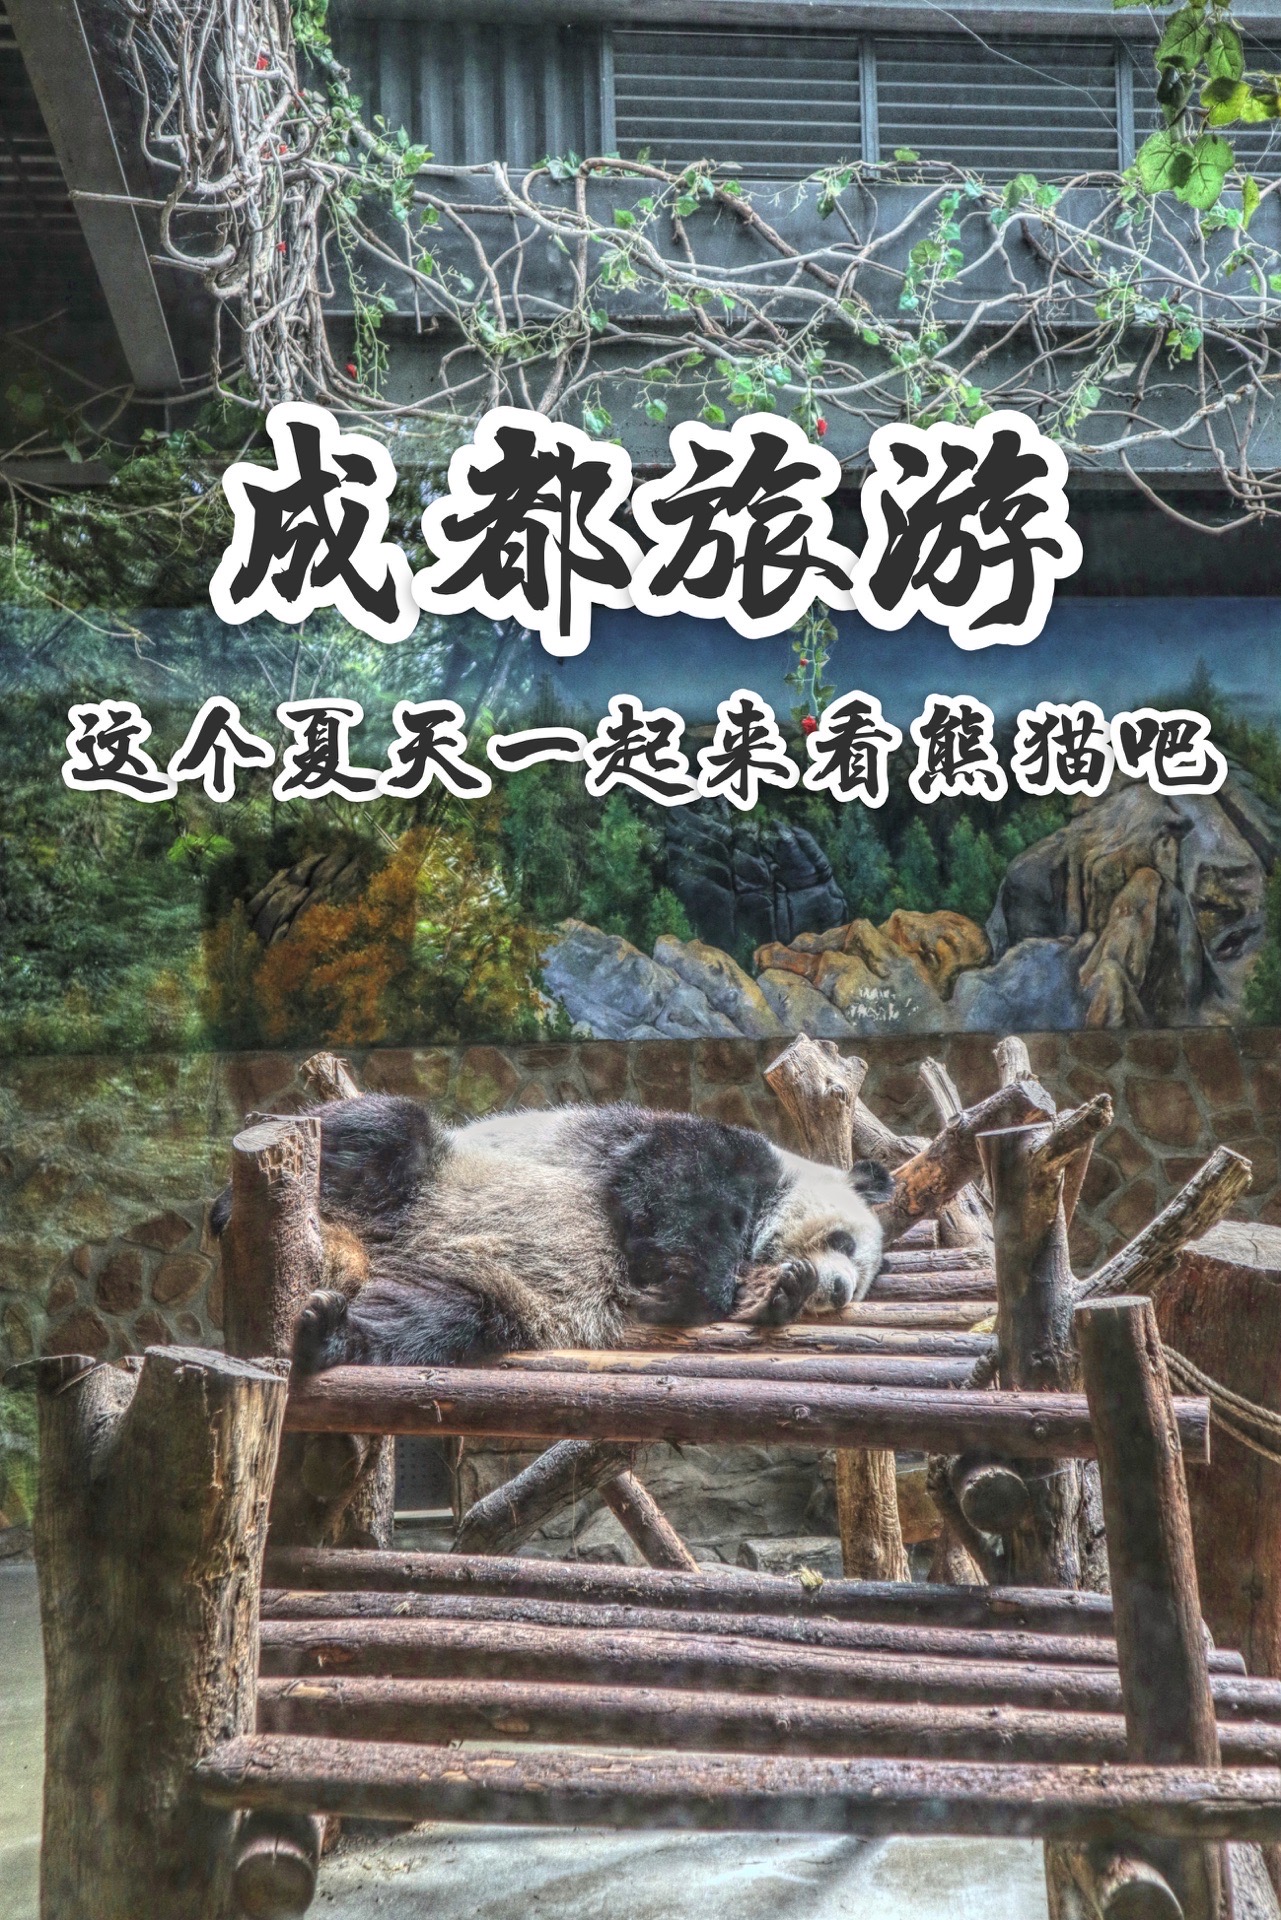 成都旅游｜🐼这个夏天来看大熊猫啦 🐼景区介绍 ✅期待许久，终于在这个夏天有机会去看大熊猫啦。💕 成都